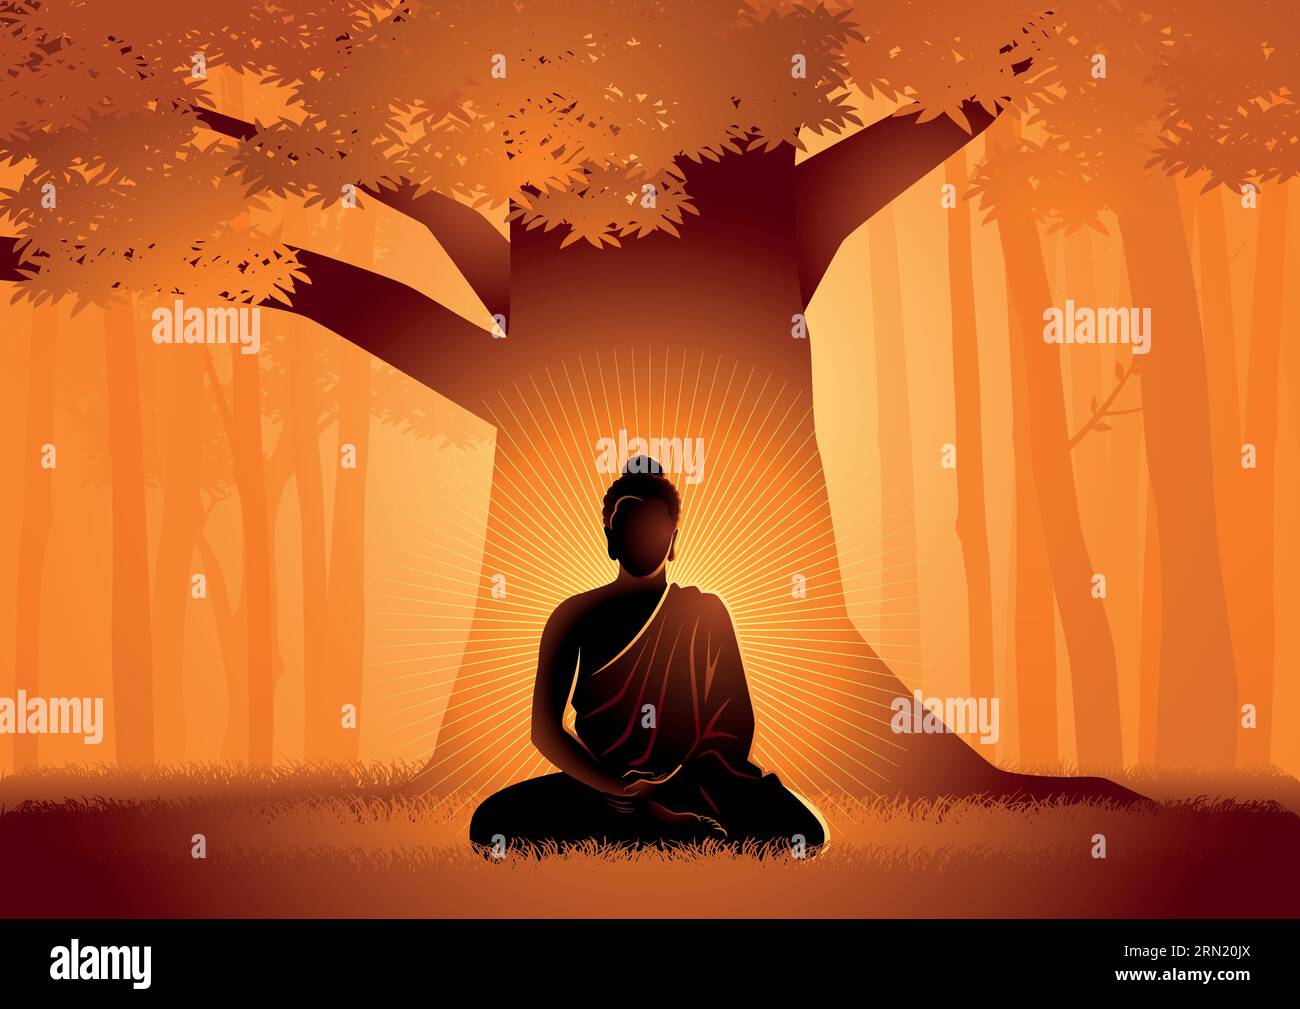 Illustration vectorielle de Siddhartha Gautama éclairée sous l'arbre de Bodhi, illumination du Bouddha sous l'arbre de Bodhi Illustration de Vecteur